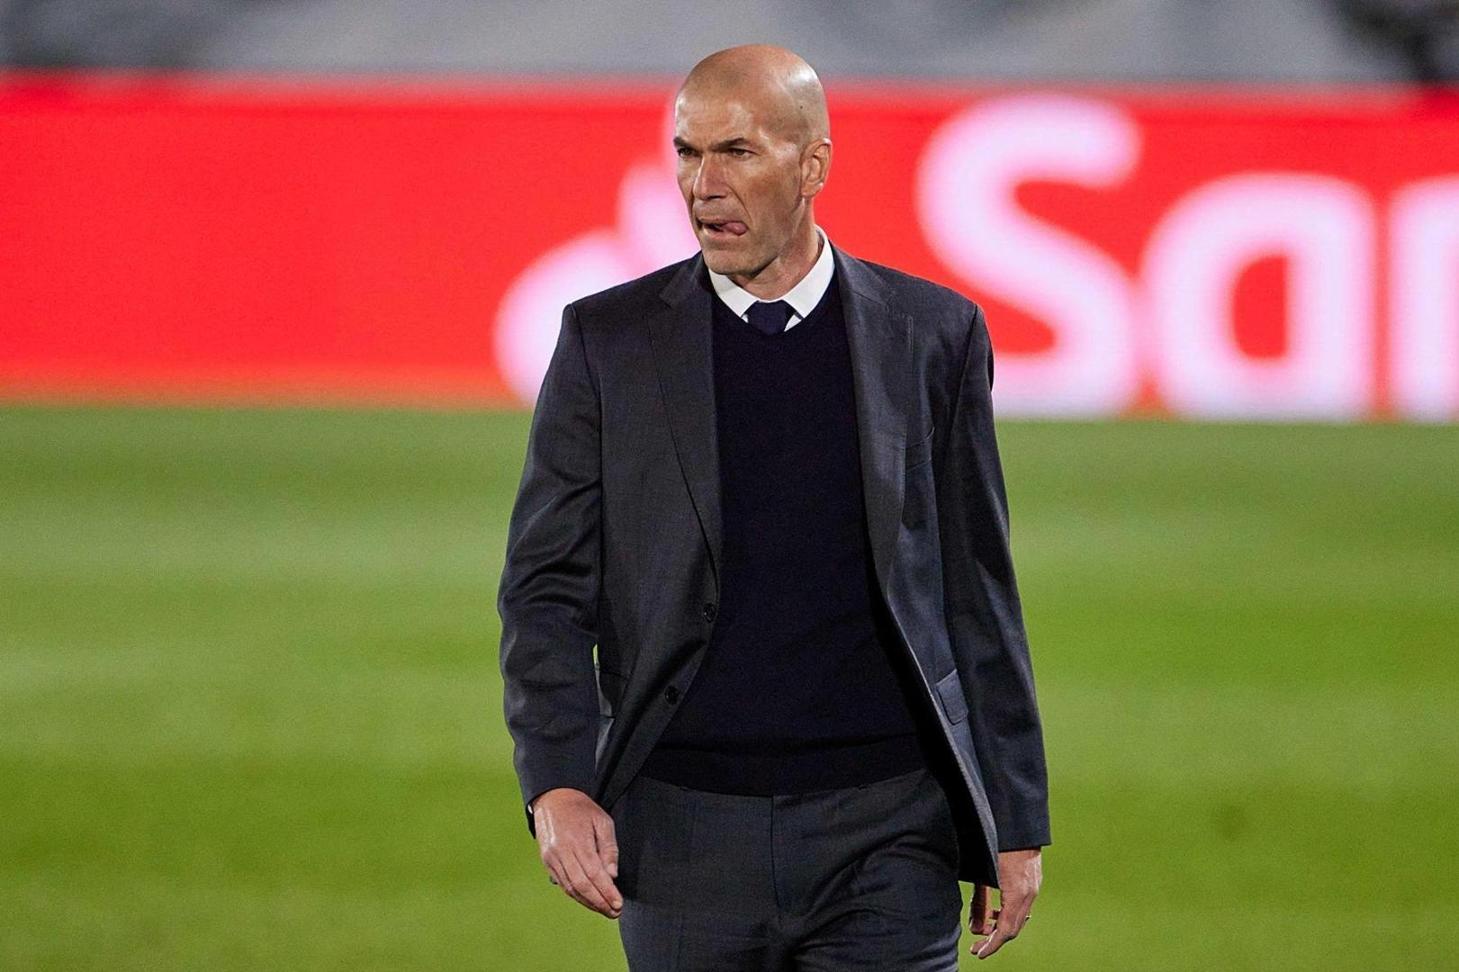 Zinedine Zidane sur le banc parisien la saison prochaine ? Voilà le cadeau que veut faire Al-Khelaïfi à Mbappé, Neymar et Messi